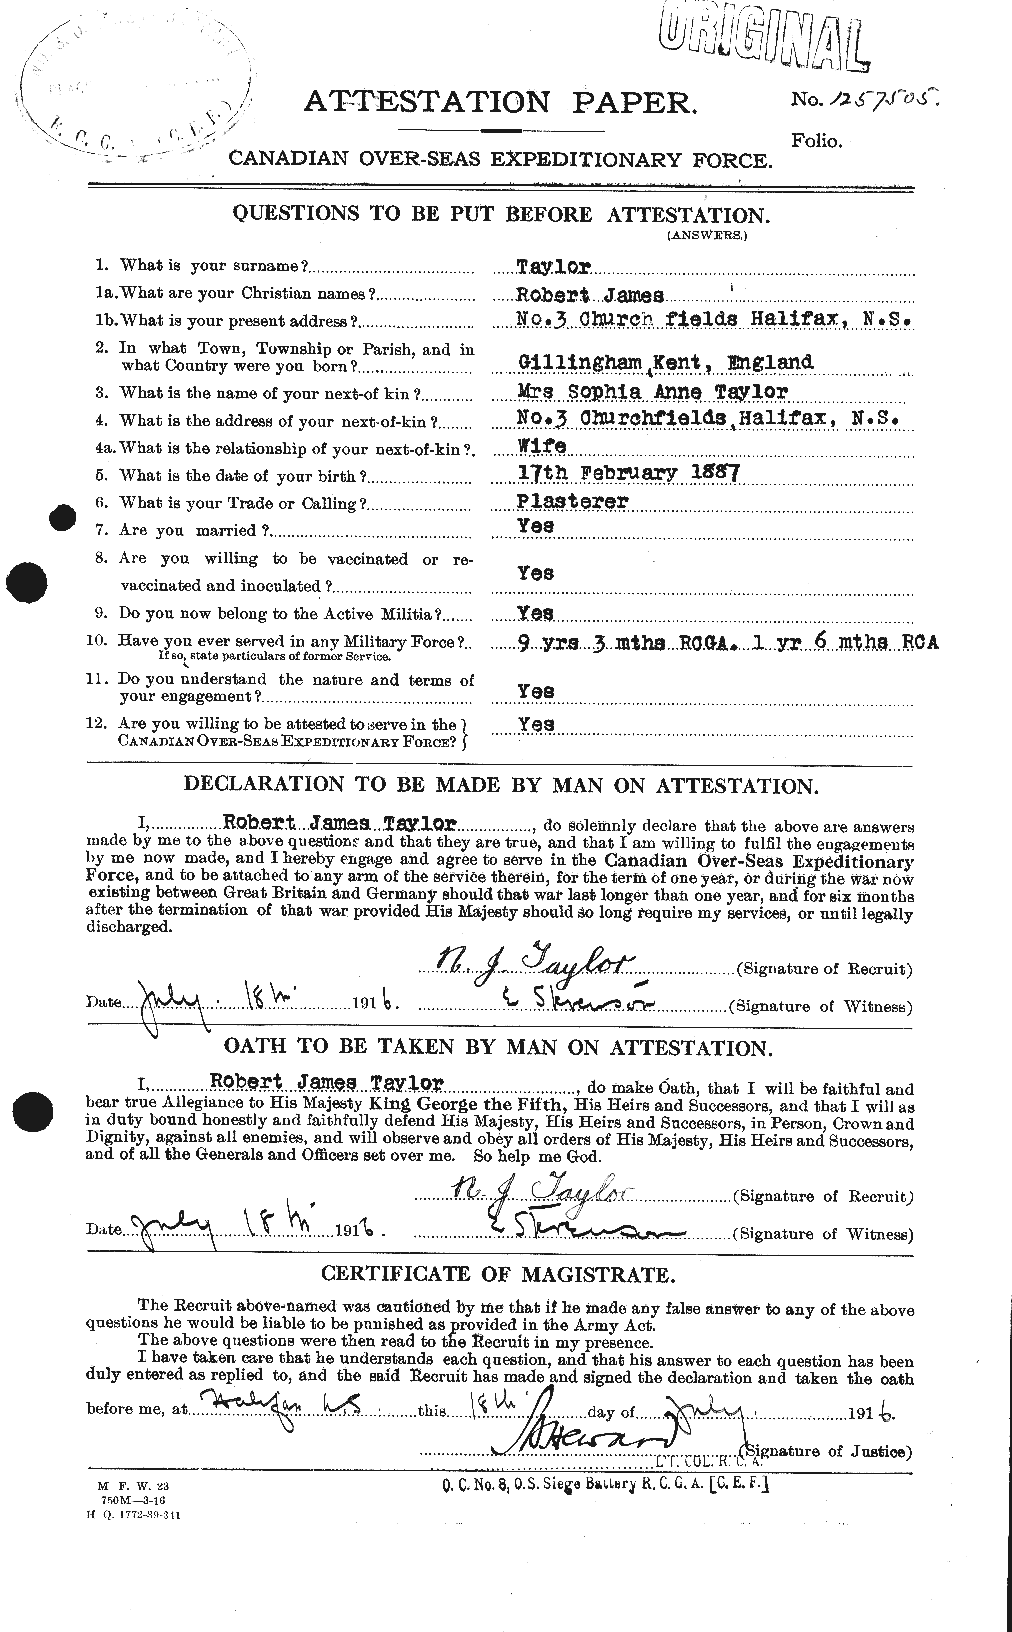 Dossiers du Personnel de la Première Guerre mondiale - CEC 627485a